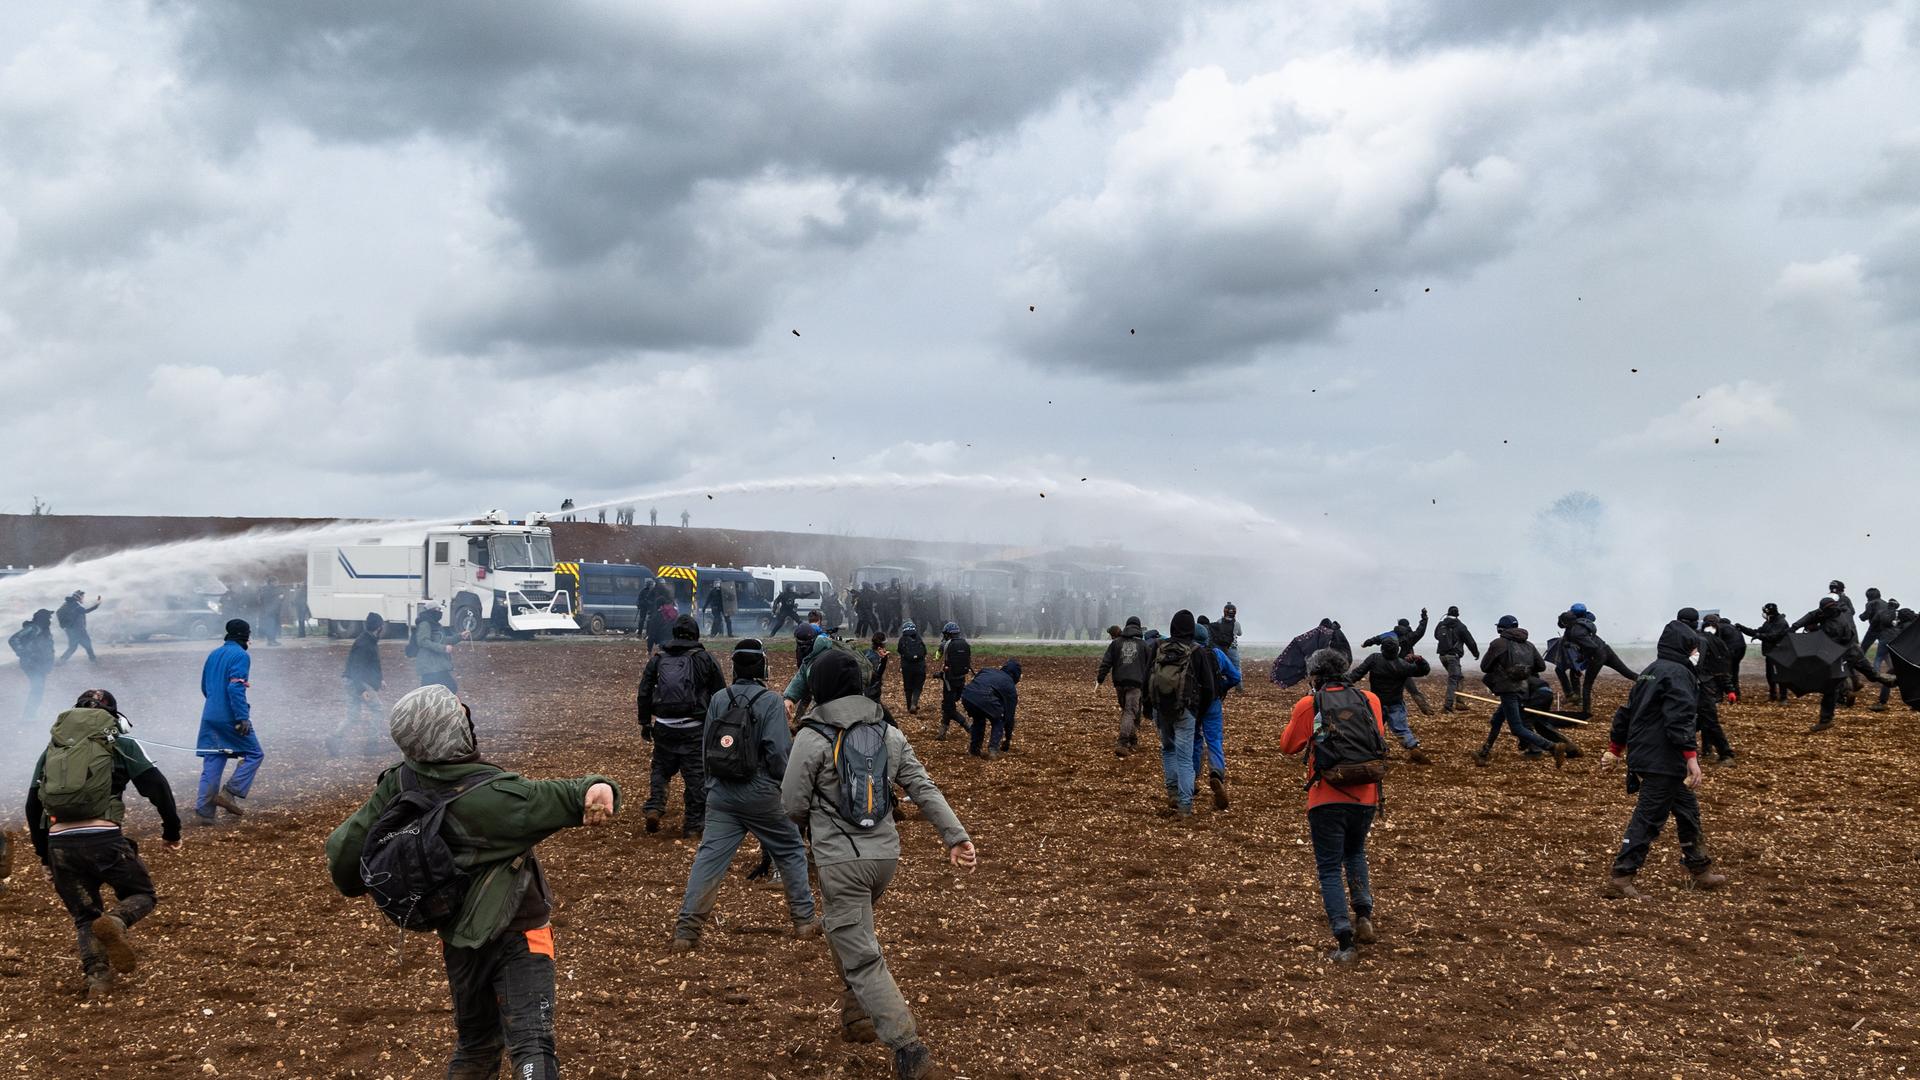 Protestierende werden während einer Demonstration mit Tränengas beschossen. Die Umweltbewegung "Les Soulèvements de la Terre'' setzt sich die Wasserreservoirs für die Landwirtschaft in Sainte-Soline in Westfrankreich zur Wehr. Am 25. März 2023 waren mehr als 3.000 Polizisten im Einsatz, rund 1.500 Aktivisten waren vor Ort. 